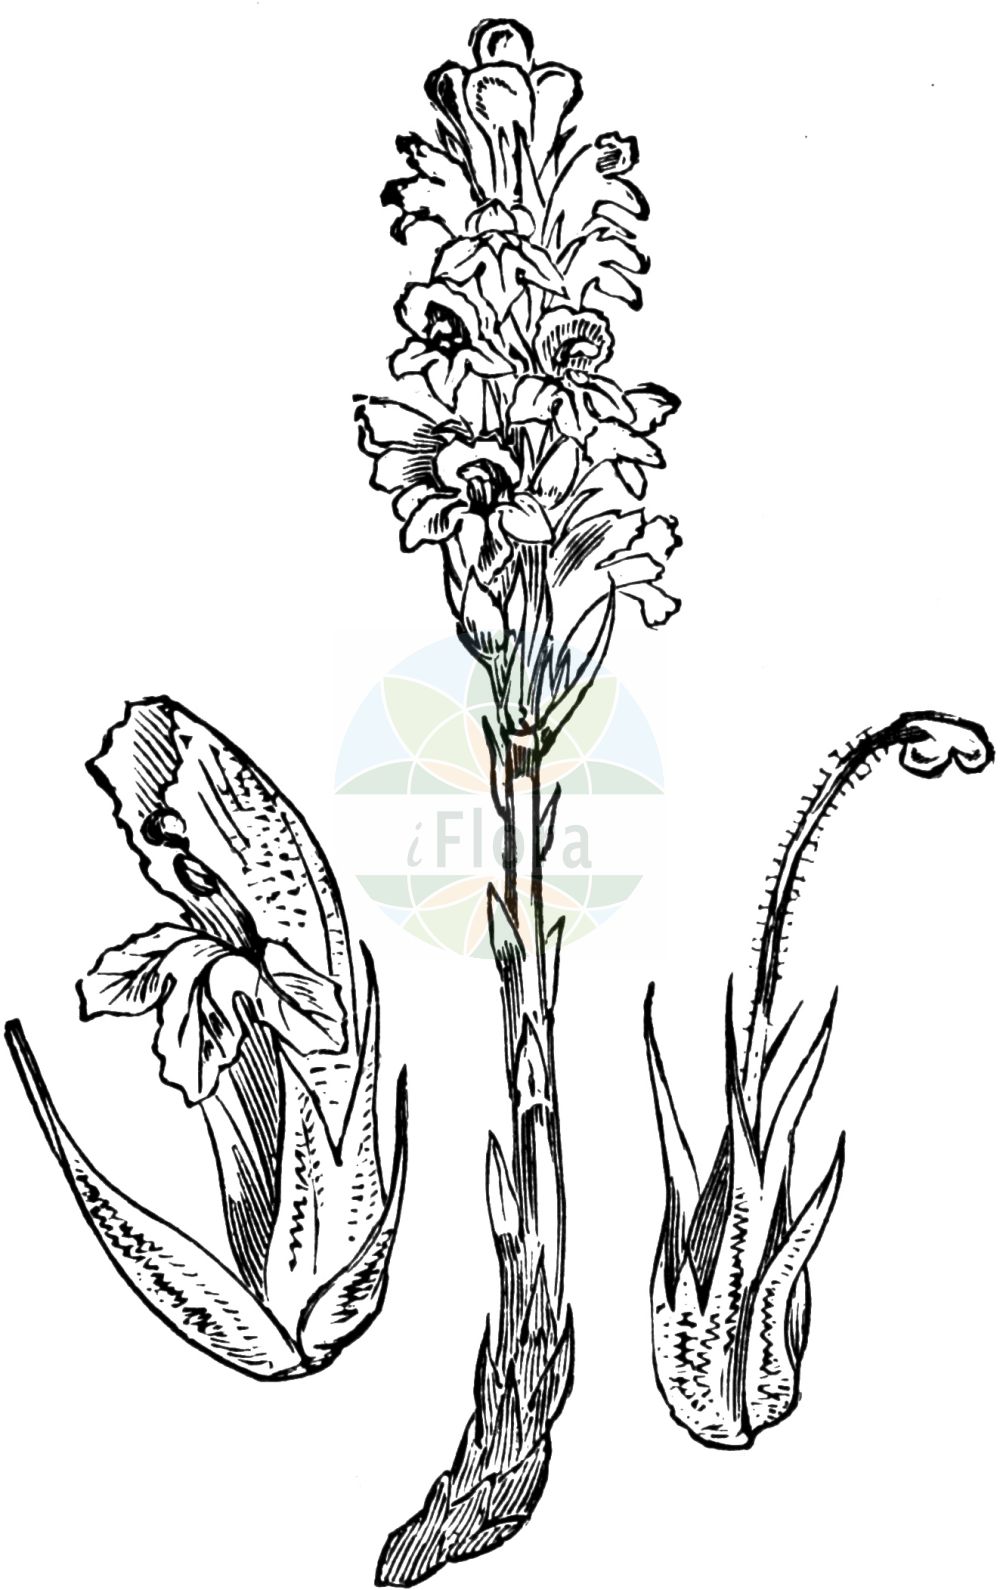 Historische Abbildung von Phelipanche purpurea (Böhmische Sommerwurz - Yarrow Broomrape). Das Bild zeigt Blatt, Bluete, Frucht und Same. ---- Historical Drawing of Phelipanche purpurea (Böhmische Sommerwurz - Yarrow Broomrape). The image is showing leaf, flower, fruit and seed.(Phelipanche purpurea,Böhmische Sommerwurz,Yarrow Broomrape,Kopsia caerulea,Kopsia purpurea,Orobanche bohemica,Orobanche caerulea,Orobanche iberica,Orobanche purpurea,Phelipanche bohemica,Phelipanche iberica,Phelipanche purpurea,Phelypaea caerulea,Phelypaea pareysii,Phelypaea purpurea,Boehmische Sommerwurz,Purpur-Sommerwurz,Yarrow Broomrape,Purple Broomrape,Phelipanche,Orobanchaceae,Sommerwurzgewächse,Broomrape family,Blatt,Bluete,Frucht,Same,leaf,flower,fruit,seed,Fitch et al. (1880))